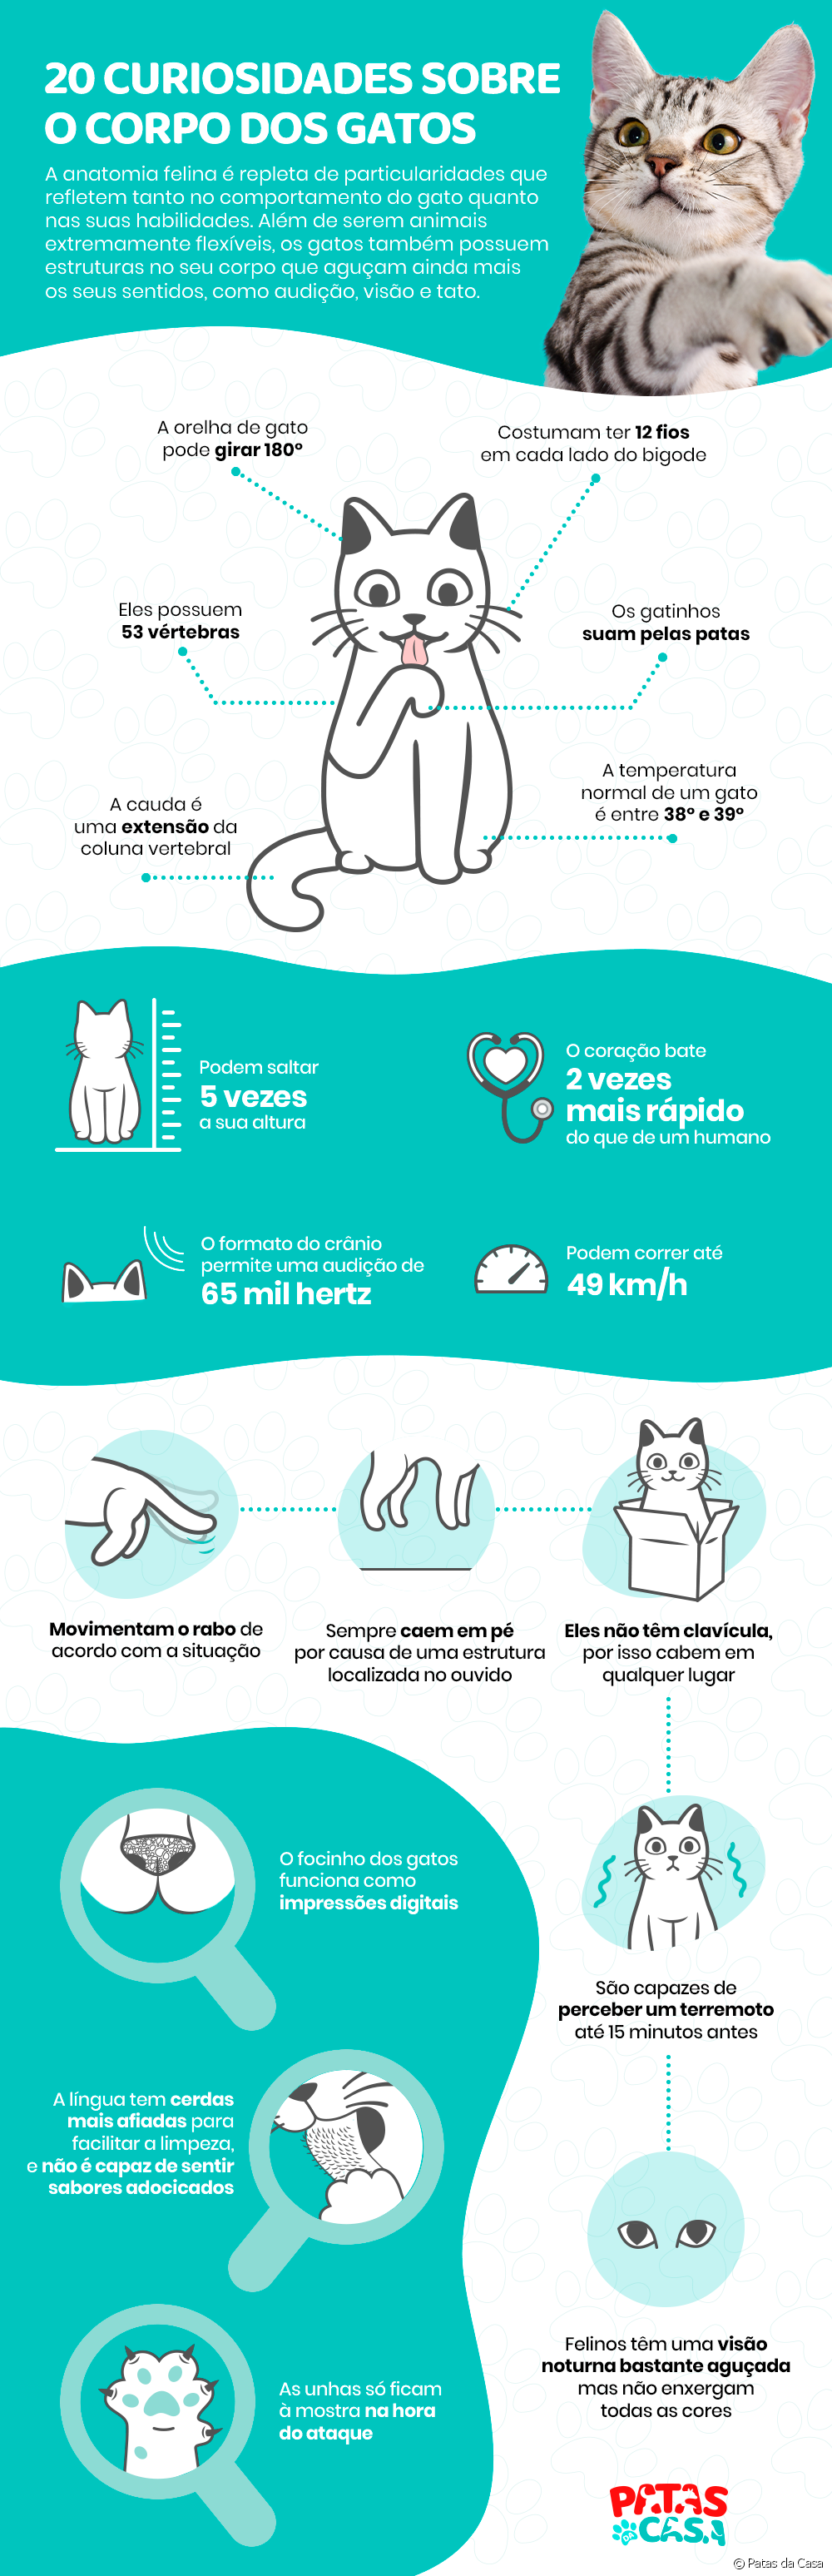  고양이 해부학: 고양이 신체에 대한 20가지 호기심을 인포그래픽으로 나열합니다.